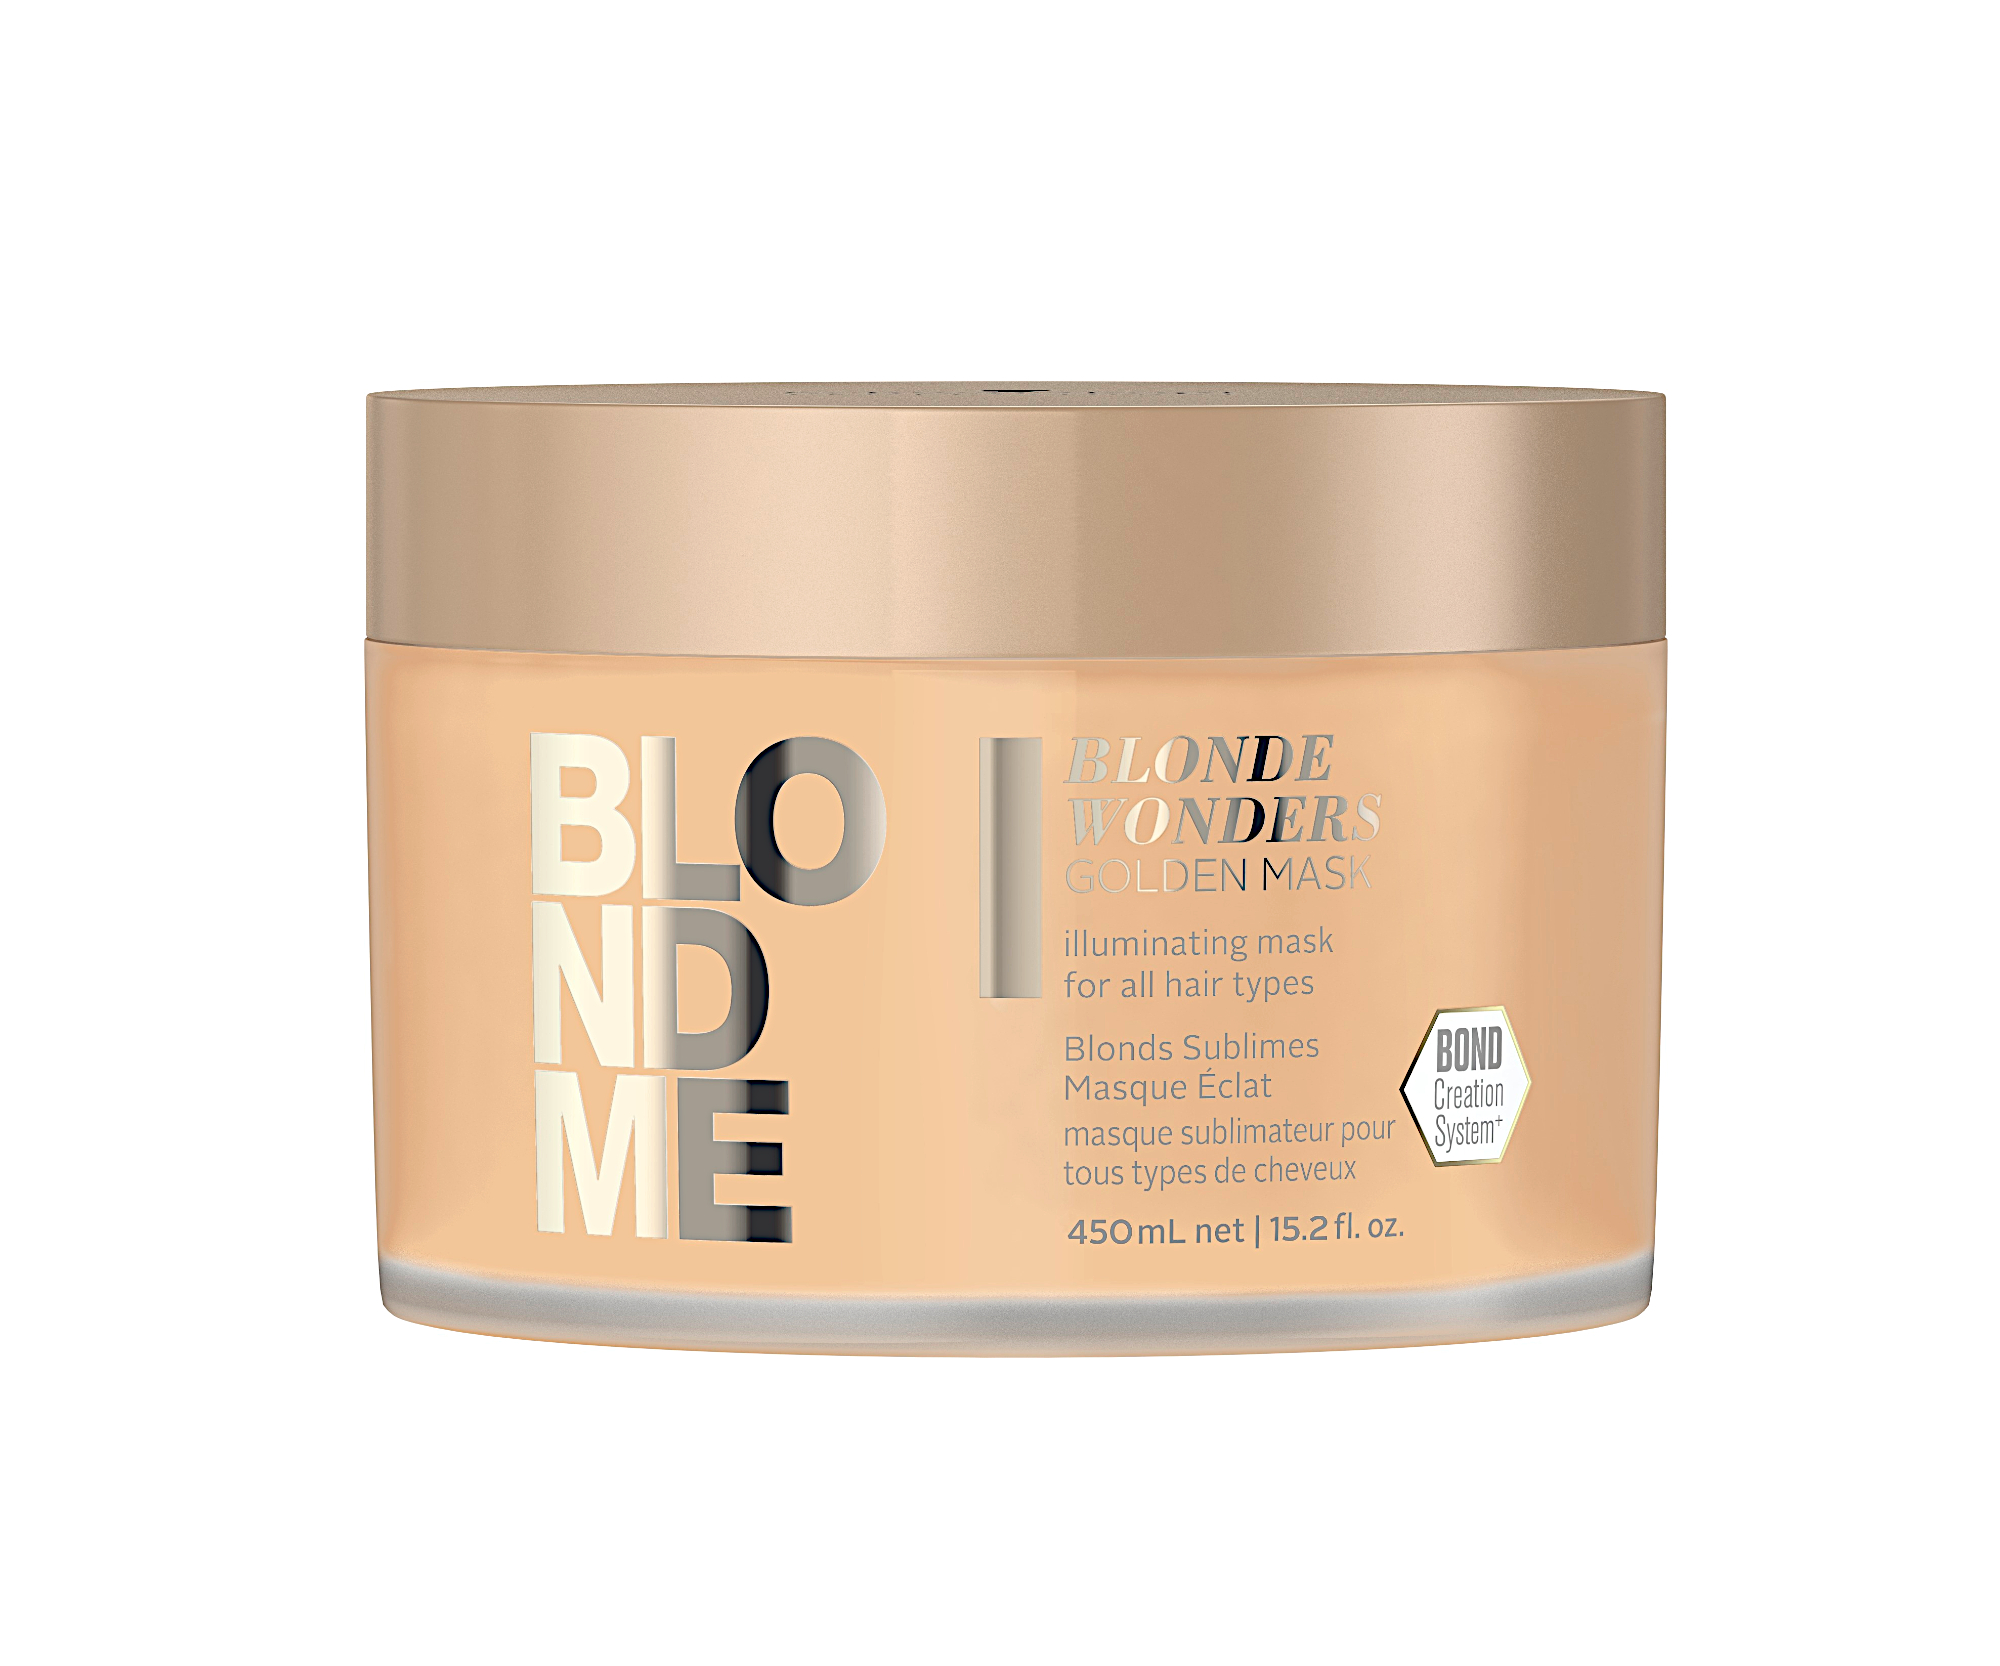 Zlatá maska pro luxusní lesk blond vlasů Schwarzkopf Professional BlondMe Blonde Wonders - 450 ml (2702280) + DÁREK ZDARMA